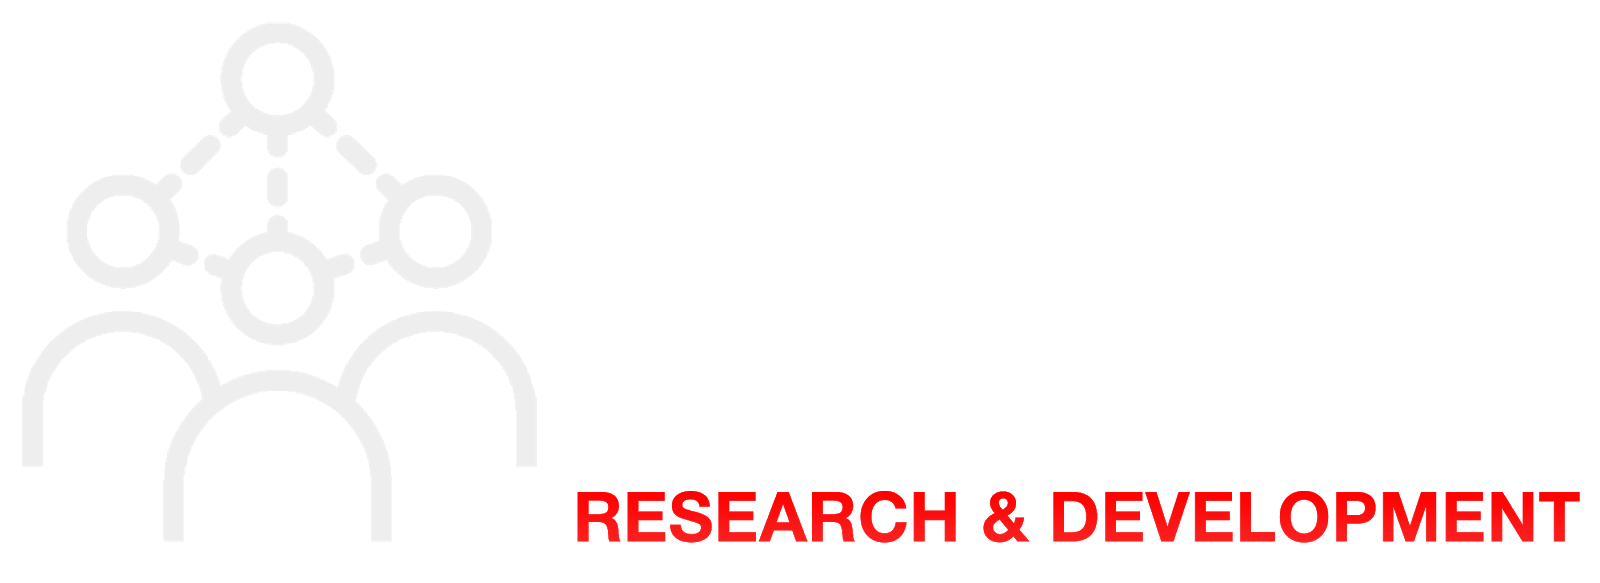 Research &amp; Development Institute